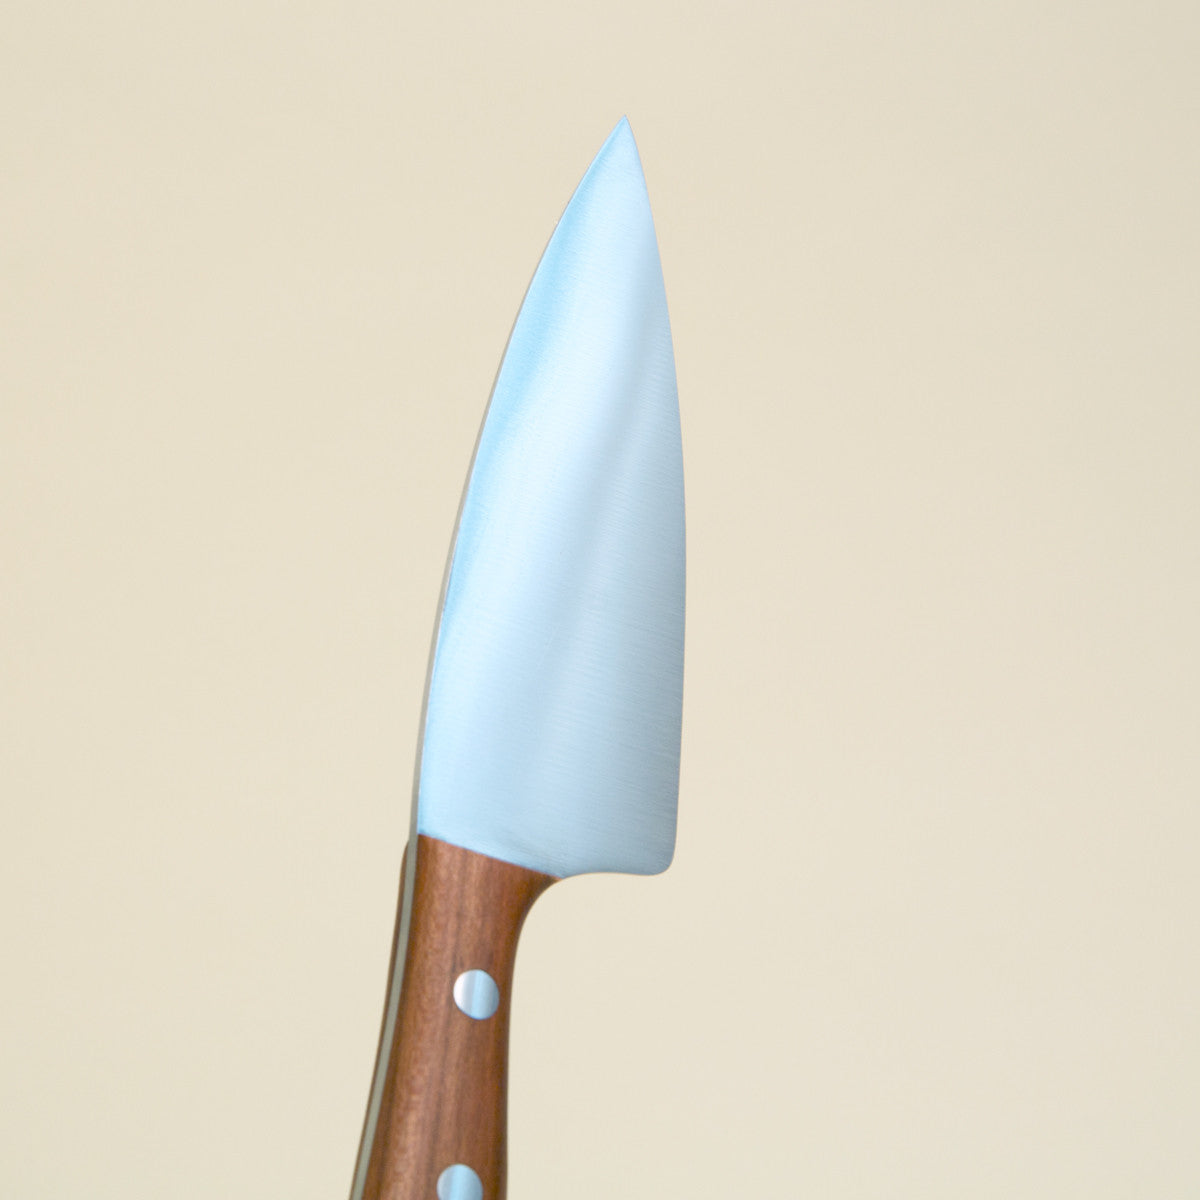 K4 Chef's Knife - Plum